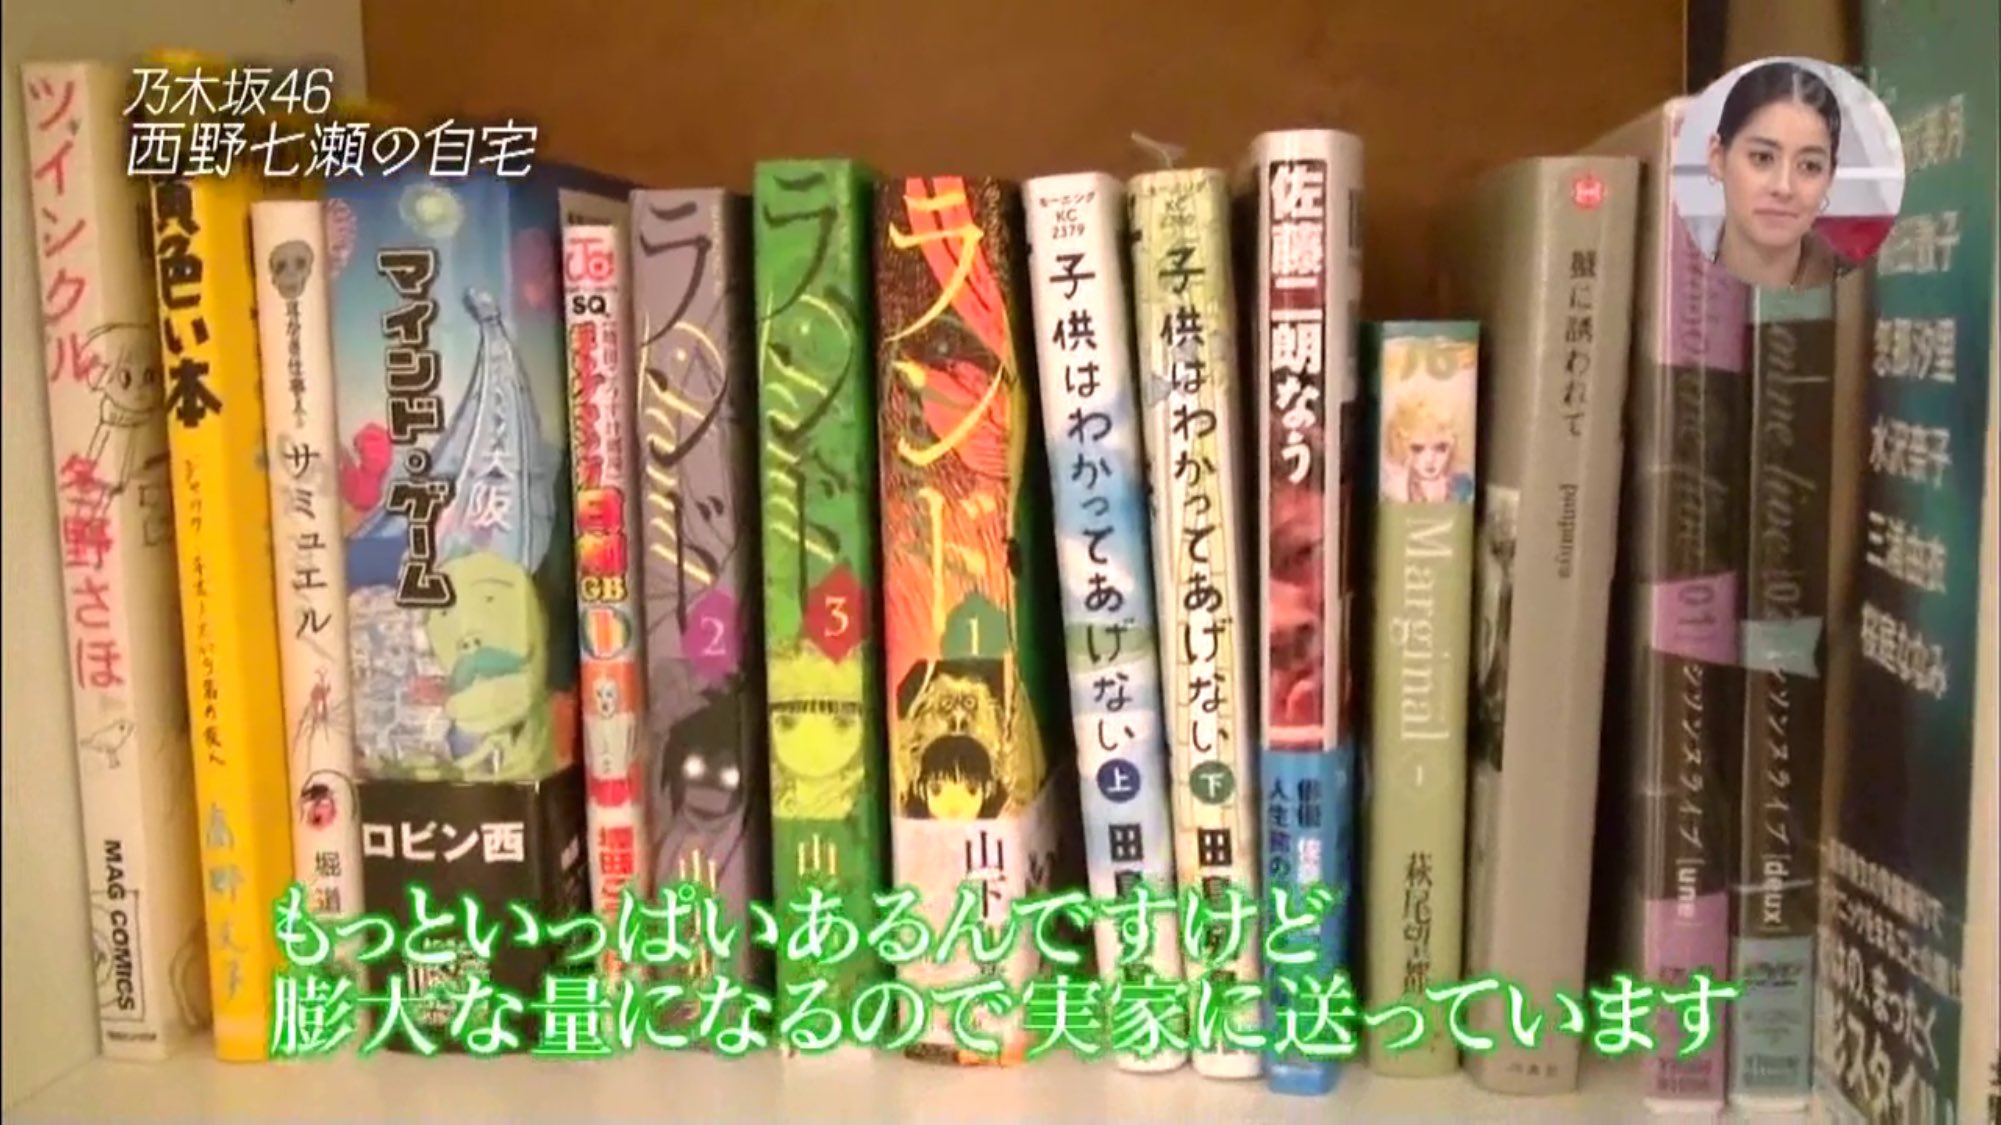 乃木坂46 漫画の趣味ってイカしてるよな 西野七瀬の本棚がこちら 乃木坂46まとめたいよ